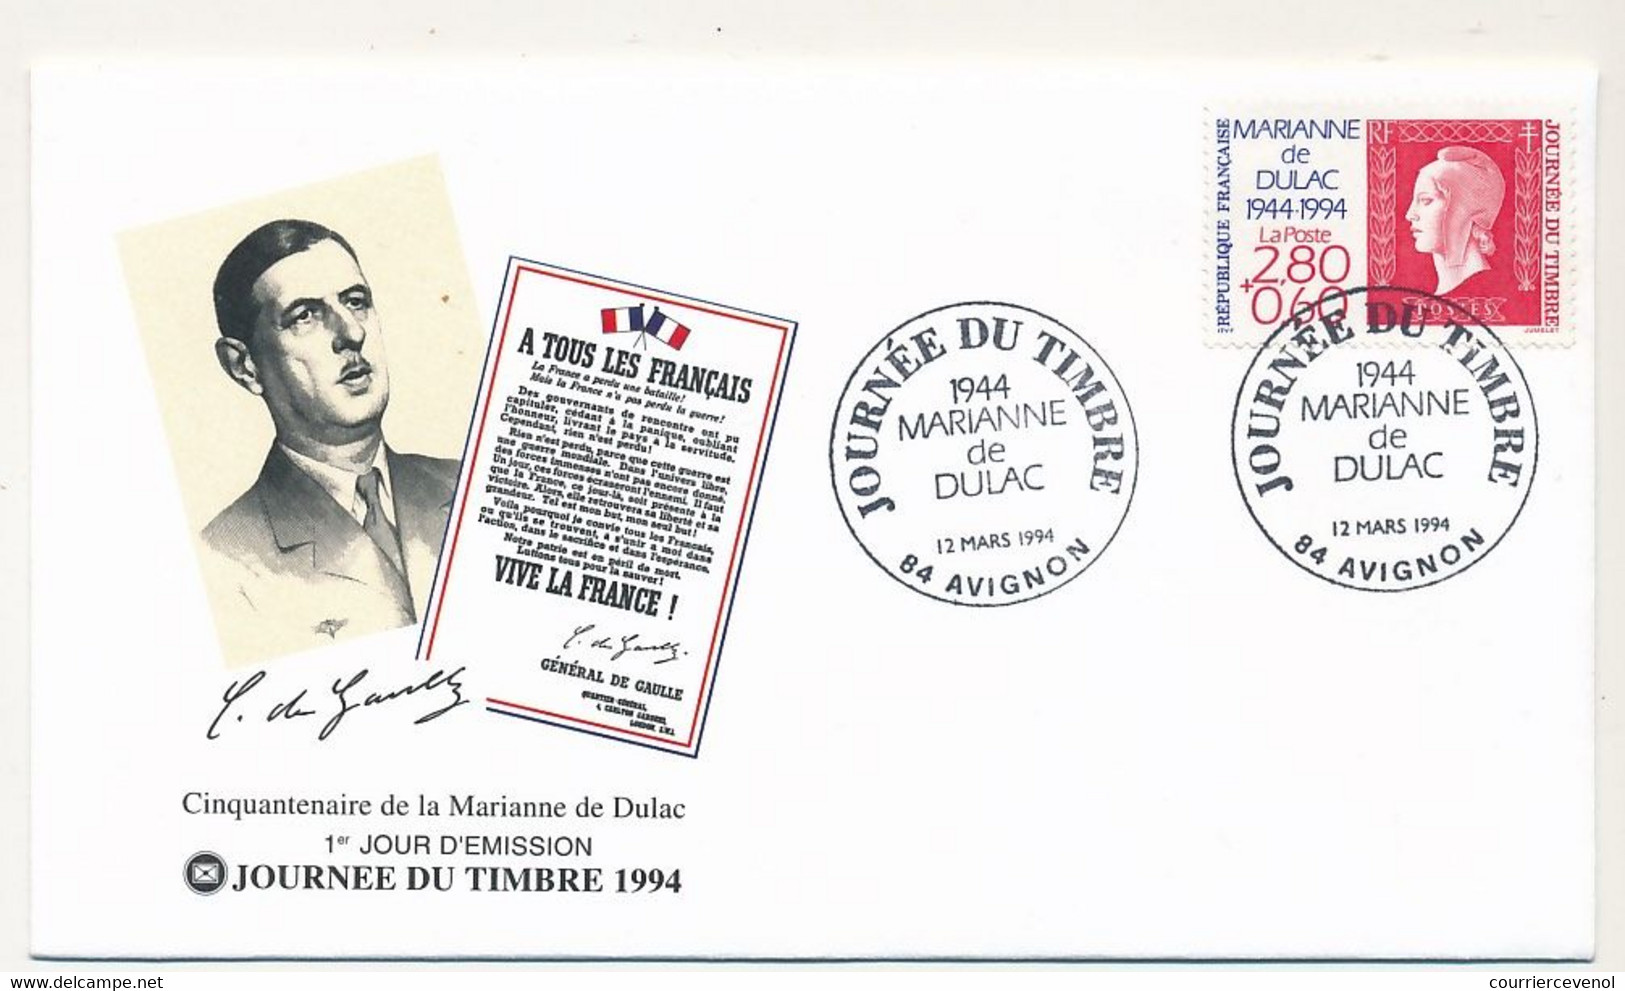 FRANCE - Enveloppe FDC Fédérale - Journée Du Timbre 1994 2,80 + 0,60 Marianne De Dulac - 12/3/1994 AVIGNON - Journée Du Timbre